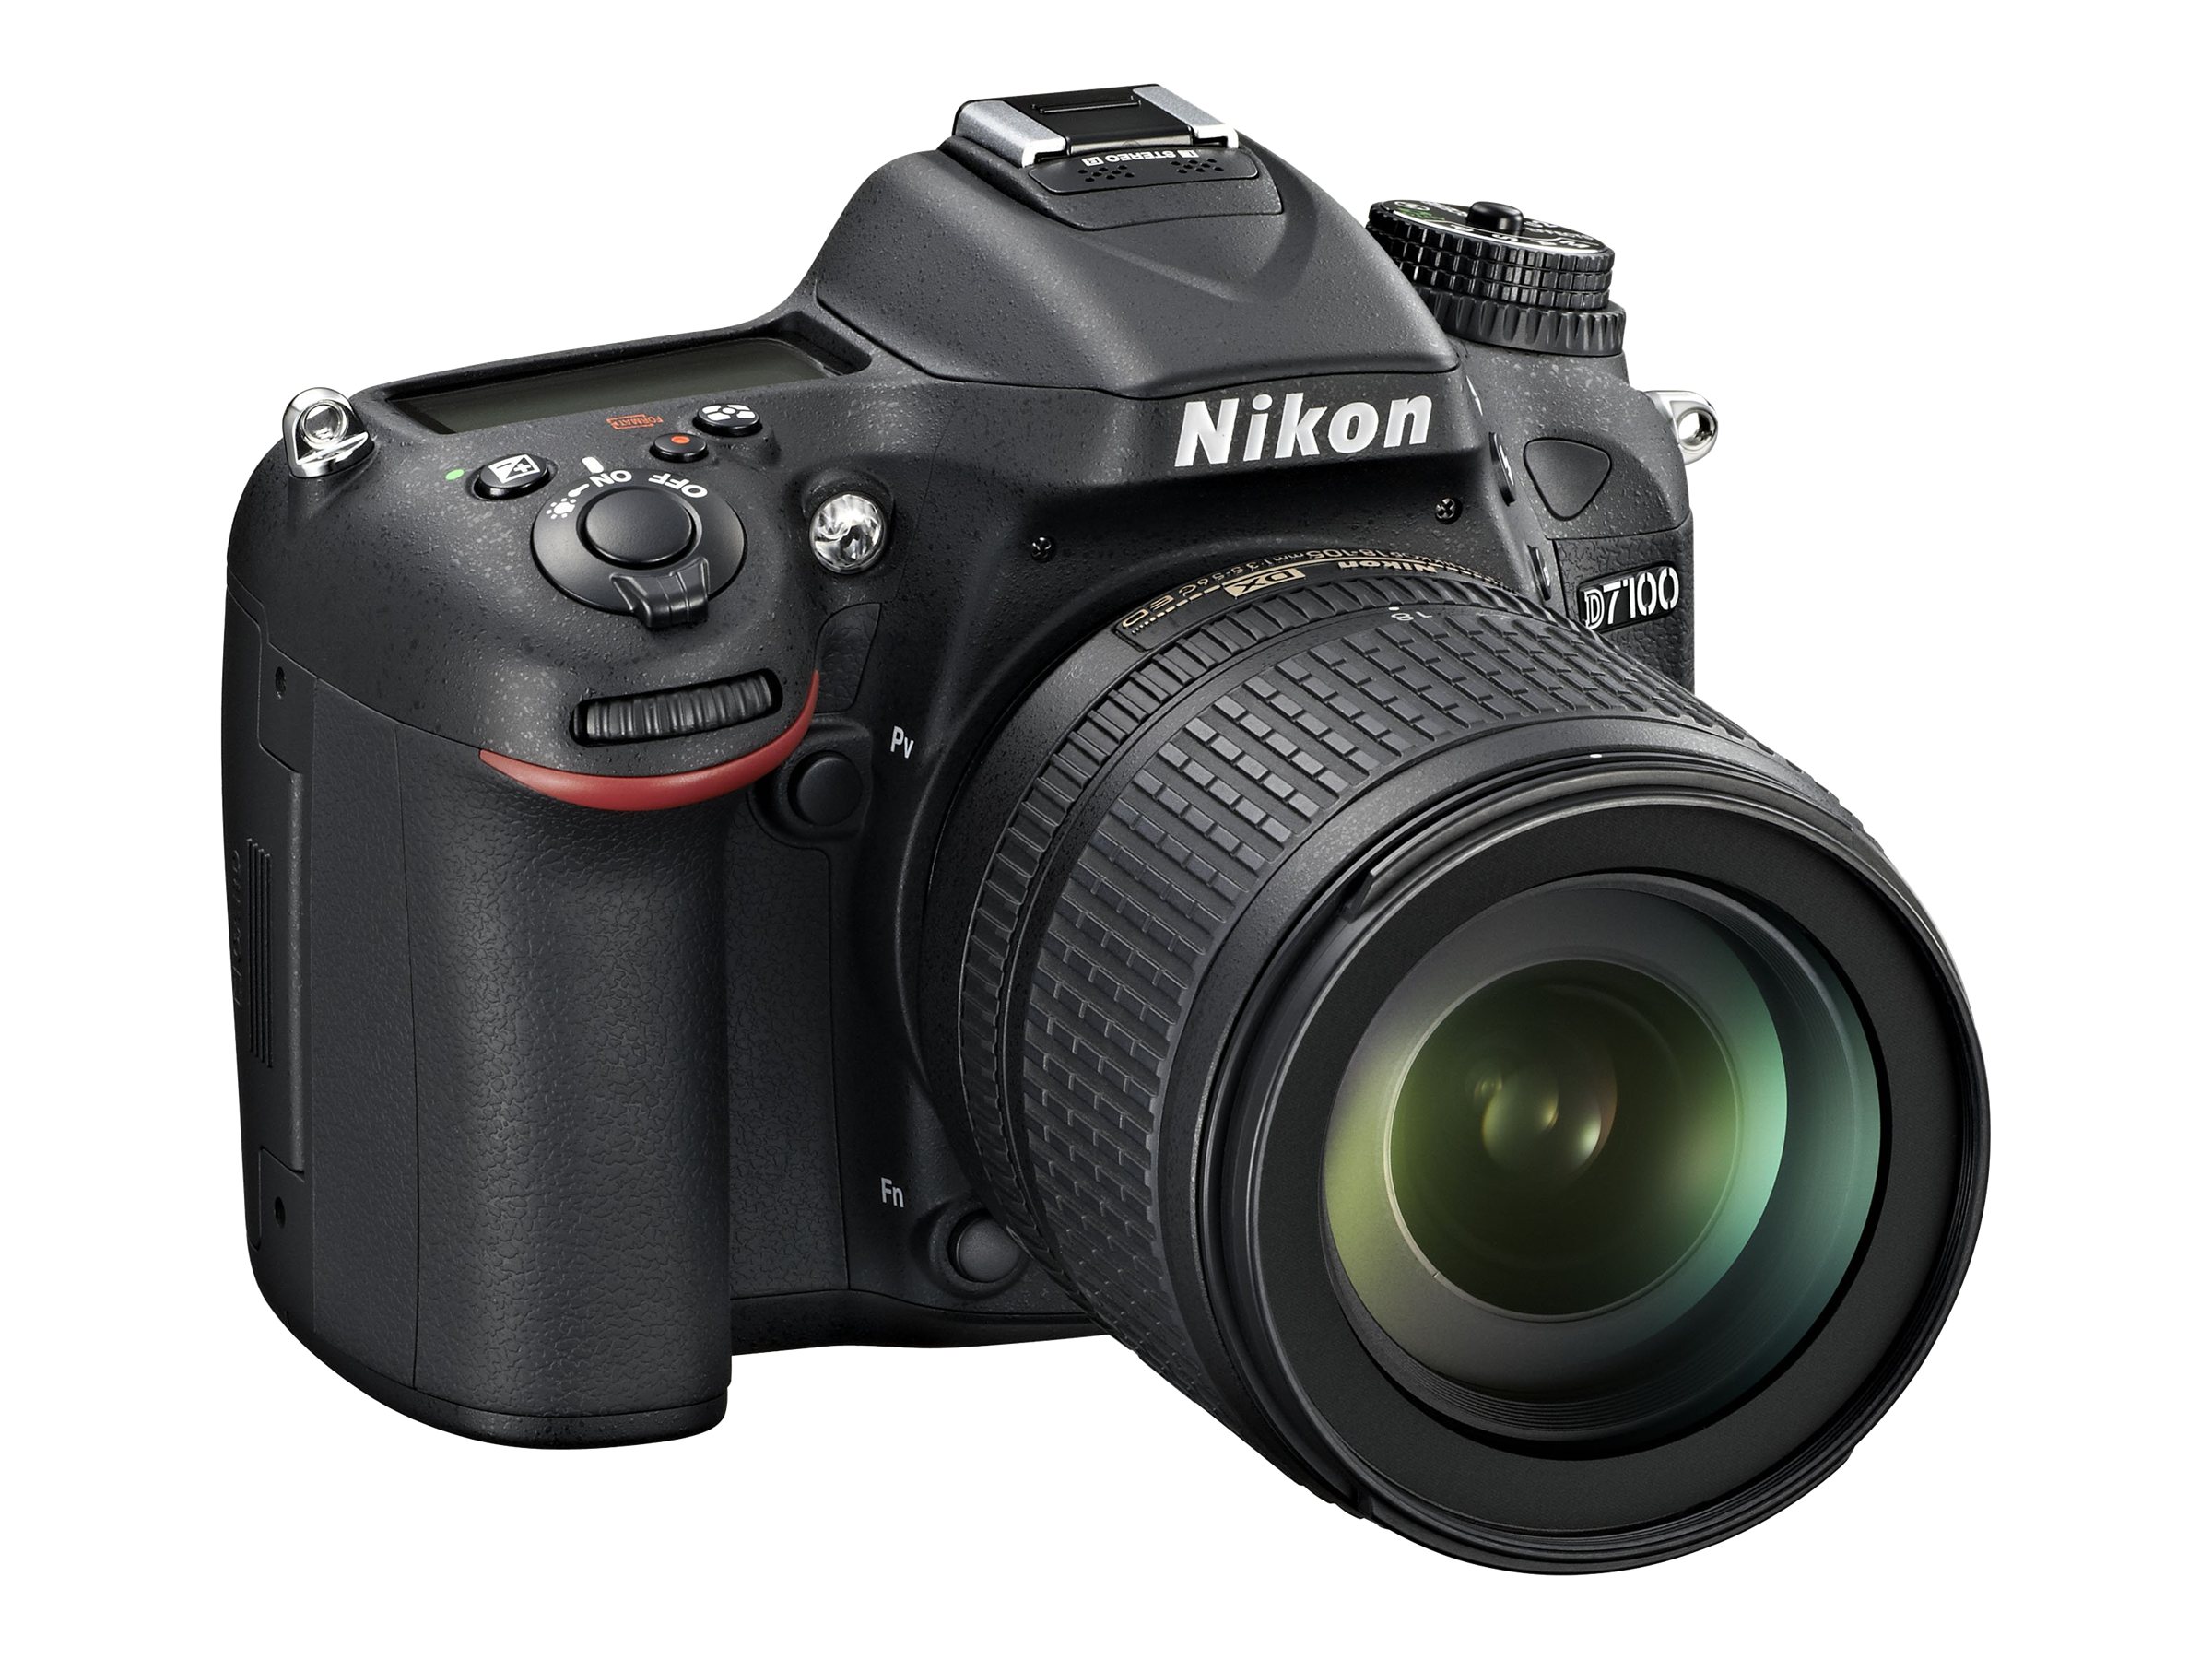 Nikon D7100 - Digital camera - SLR - 24.1 MP - APS-C - 7.8x optical zoom AF-S DX 18-140mm and AF-S 55-300mm VR lenses - black - image 3 of 5